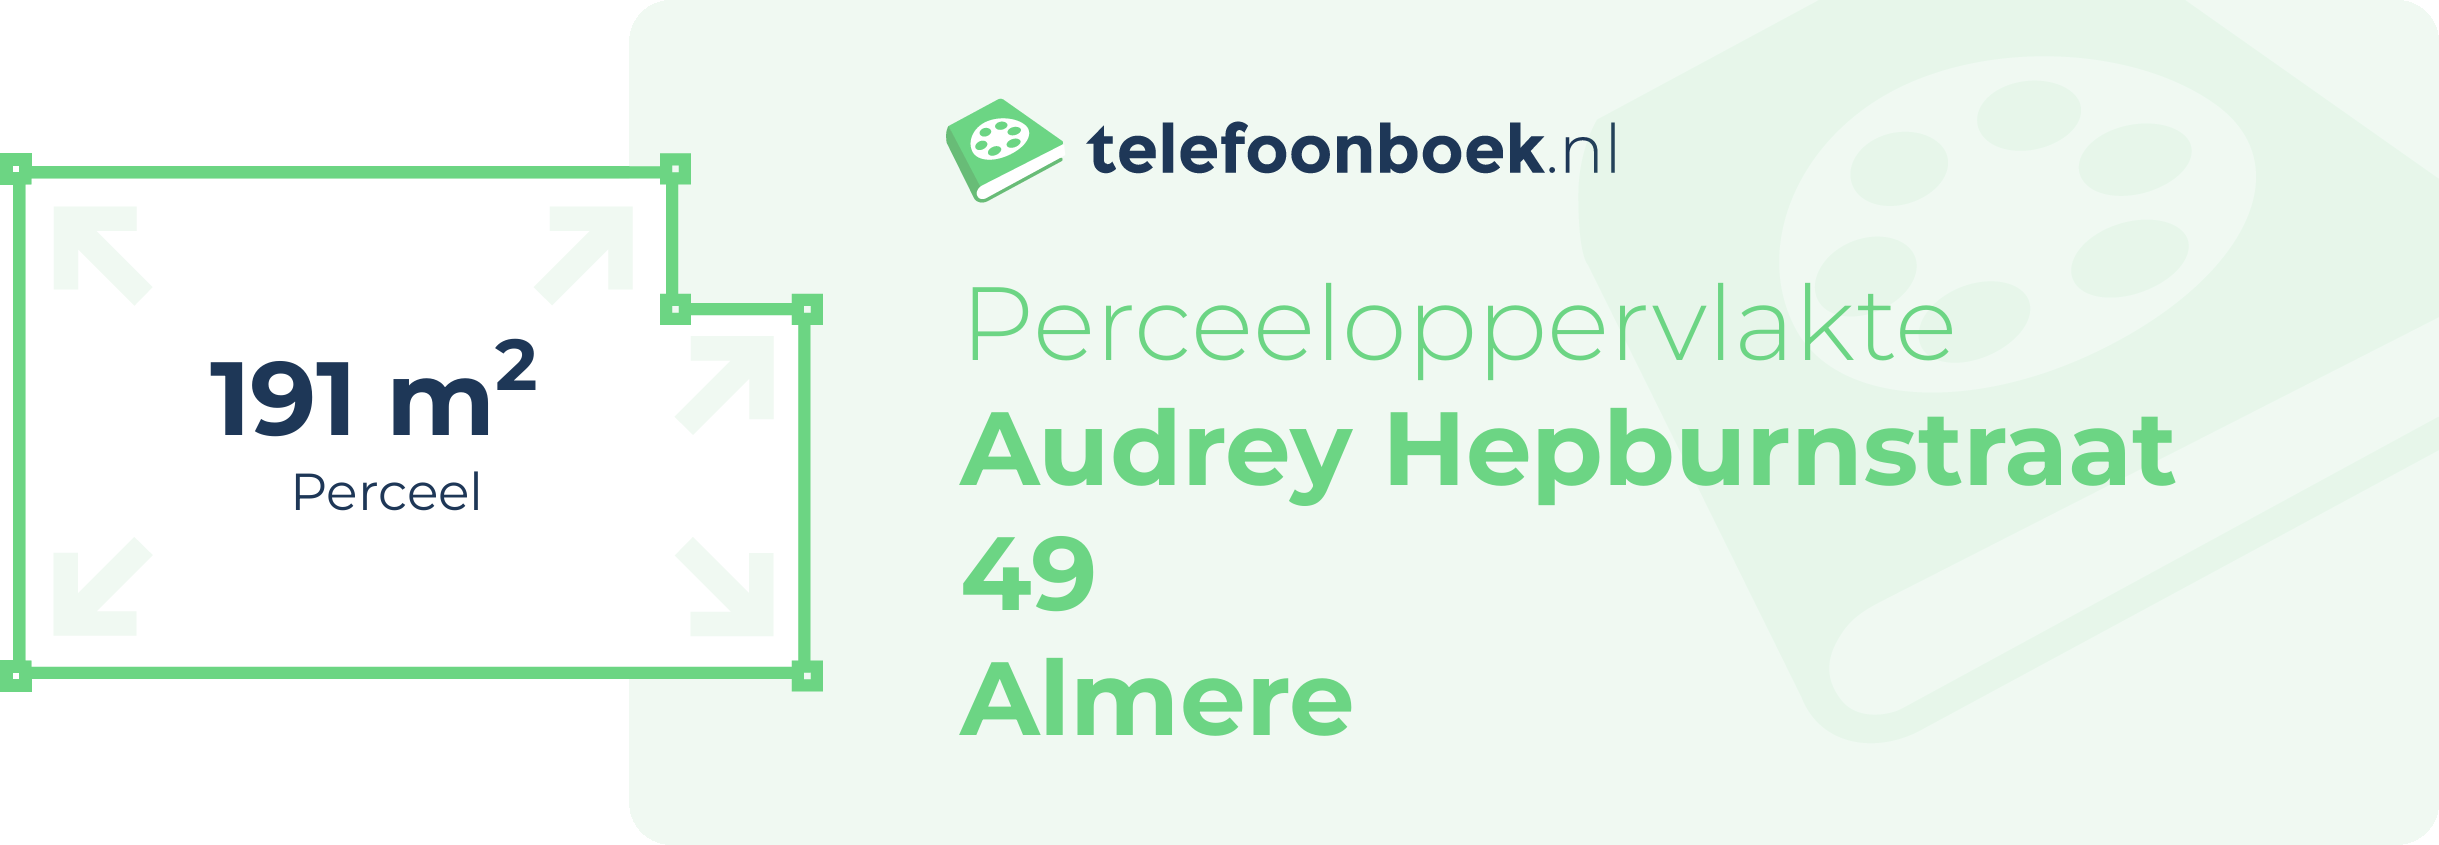 Perceeloppervlakte Audrey Hepburnstraat 49 Almere